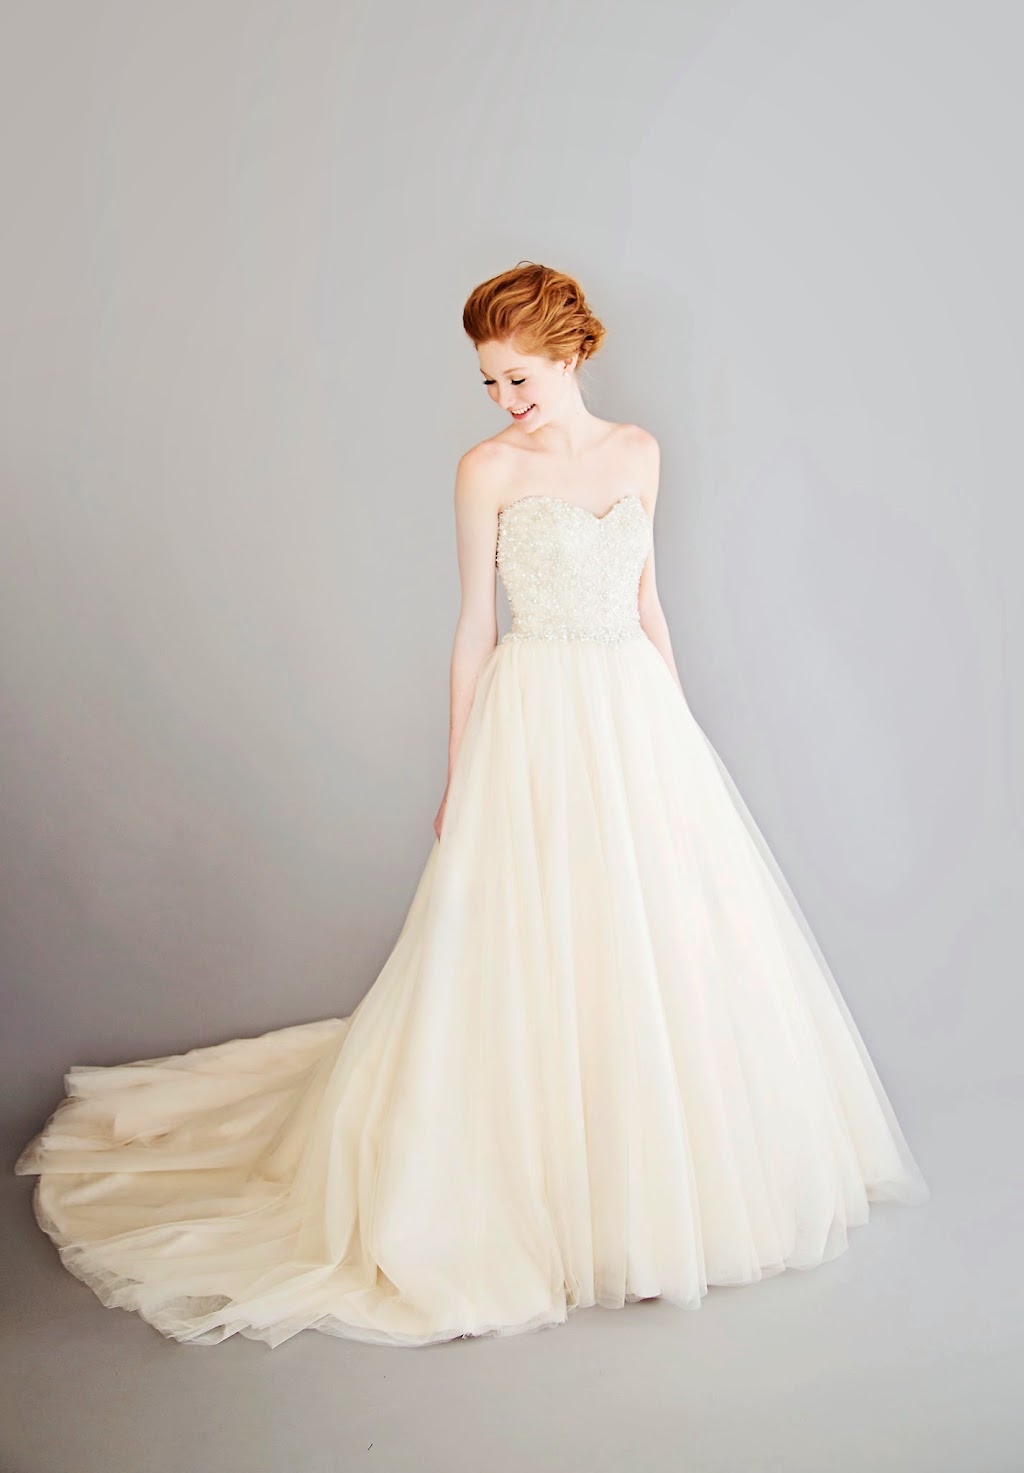 A Brides Design | 37375 Detroit Rd, Avon, OH 44011, USA | Phone: (440) 835-3655